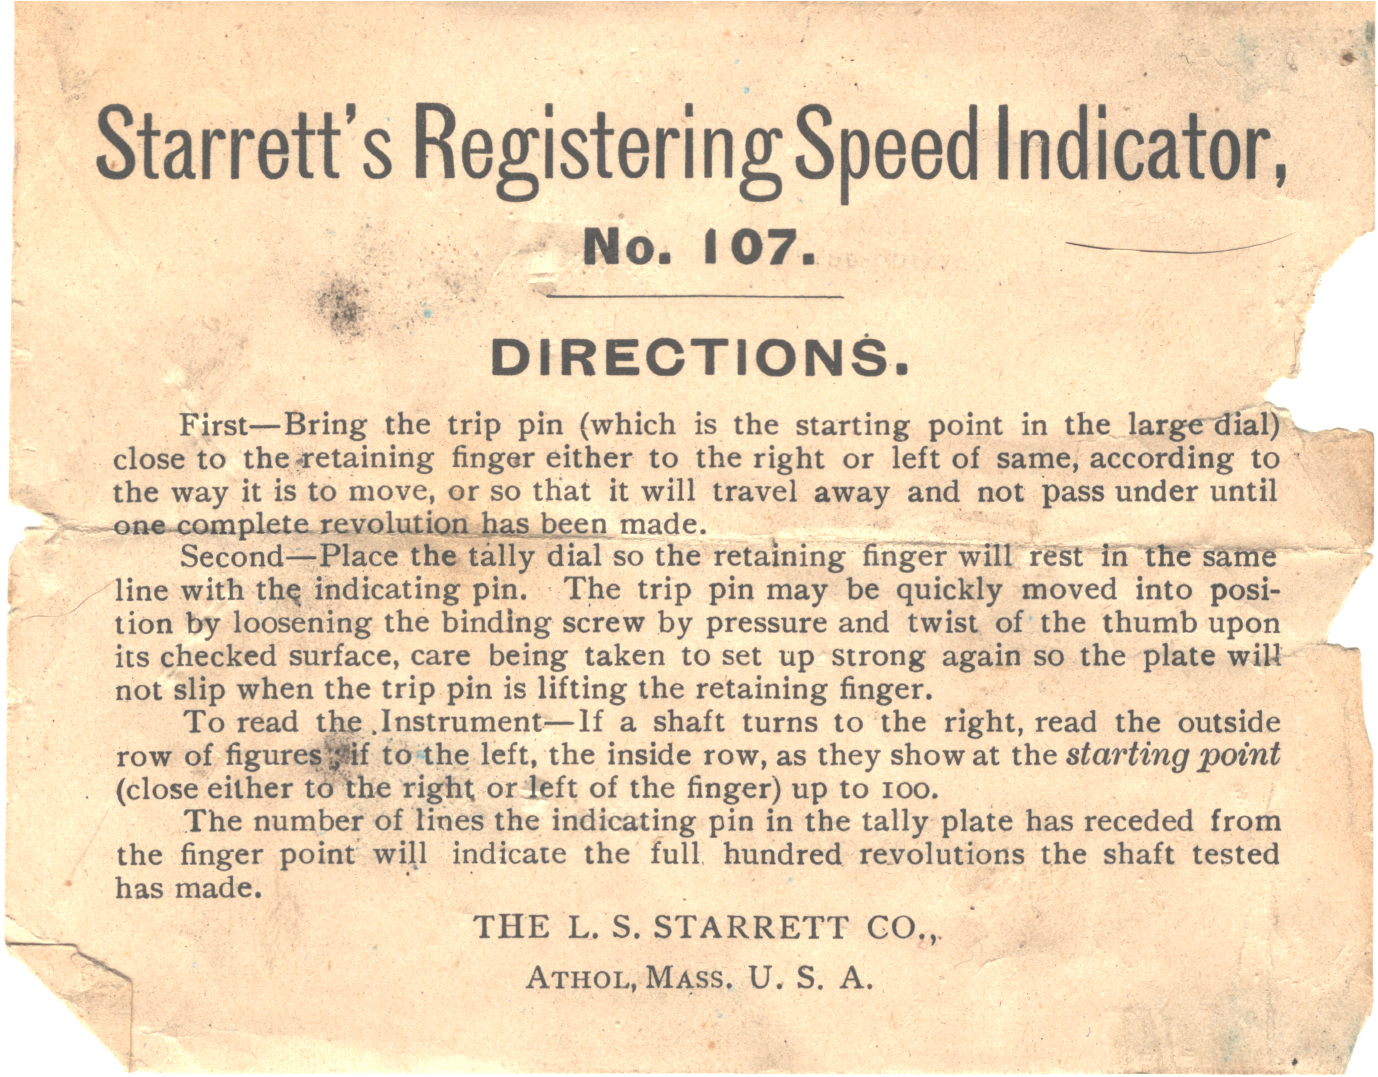 Starrett's Registering Speed Indicator, No. 107 directions.jpg